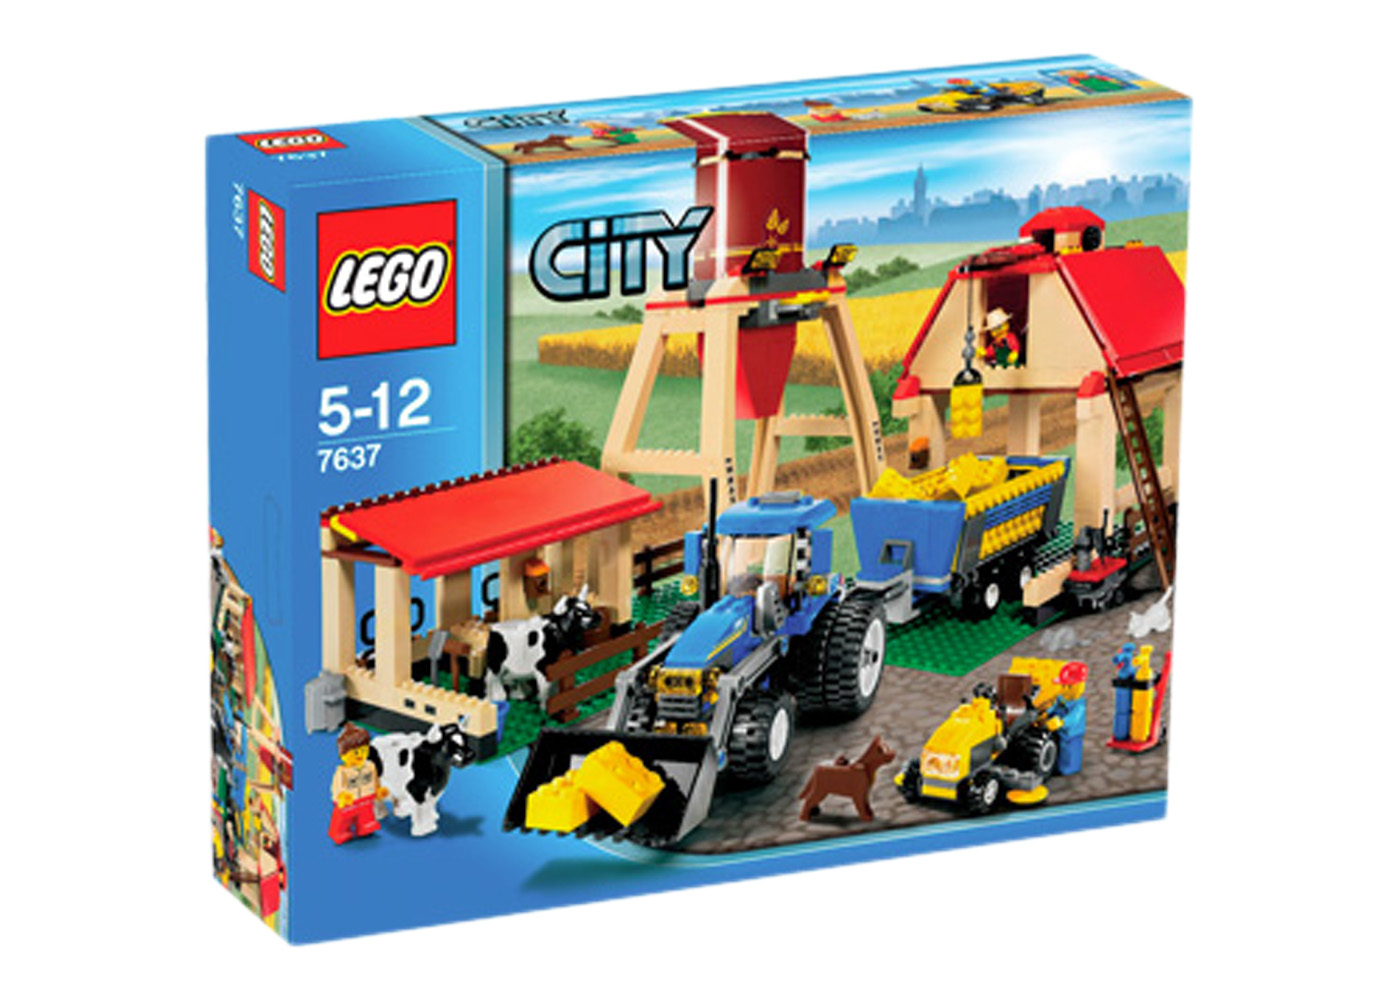 LEGO City Farm Set 7637 - US